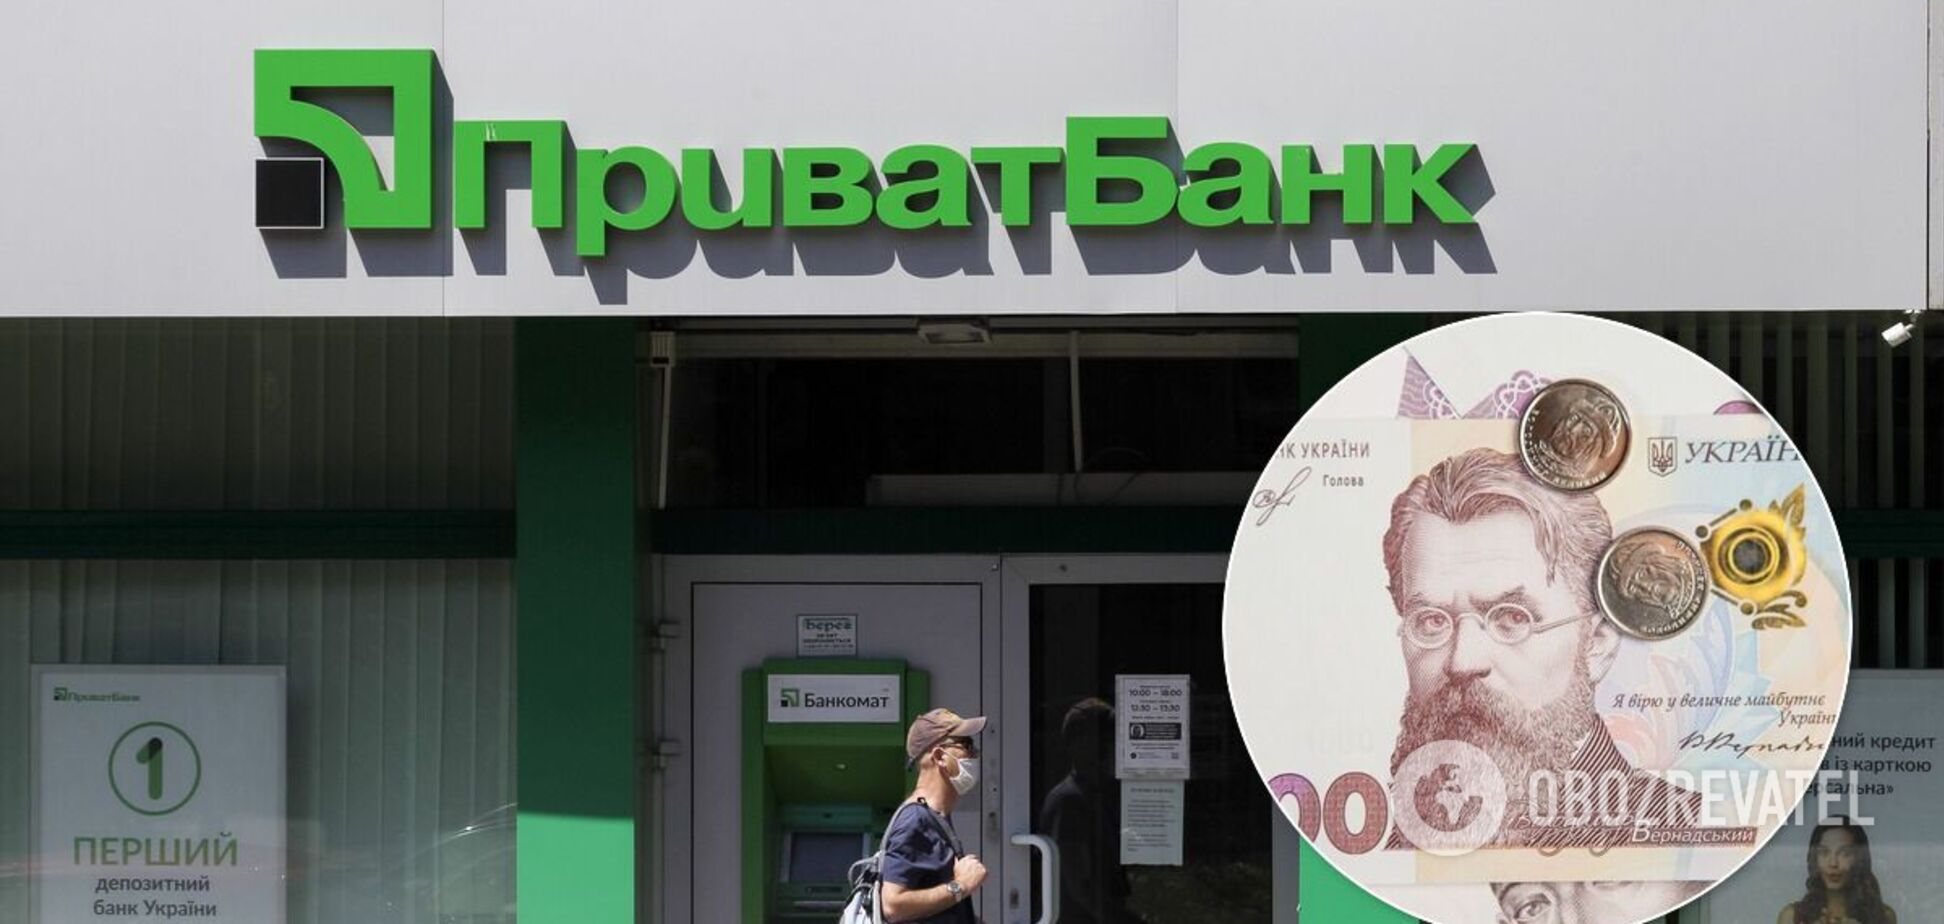 Убытки по делу Приватбанка могут составить 270 млрд гривен